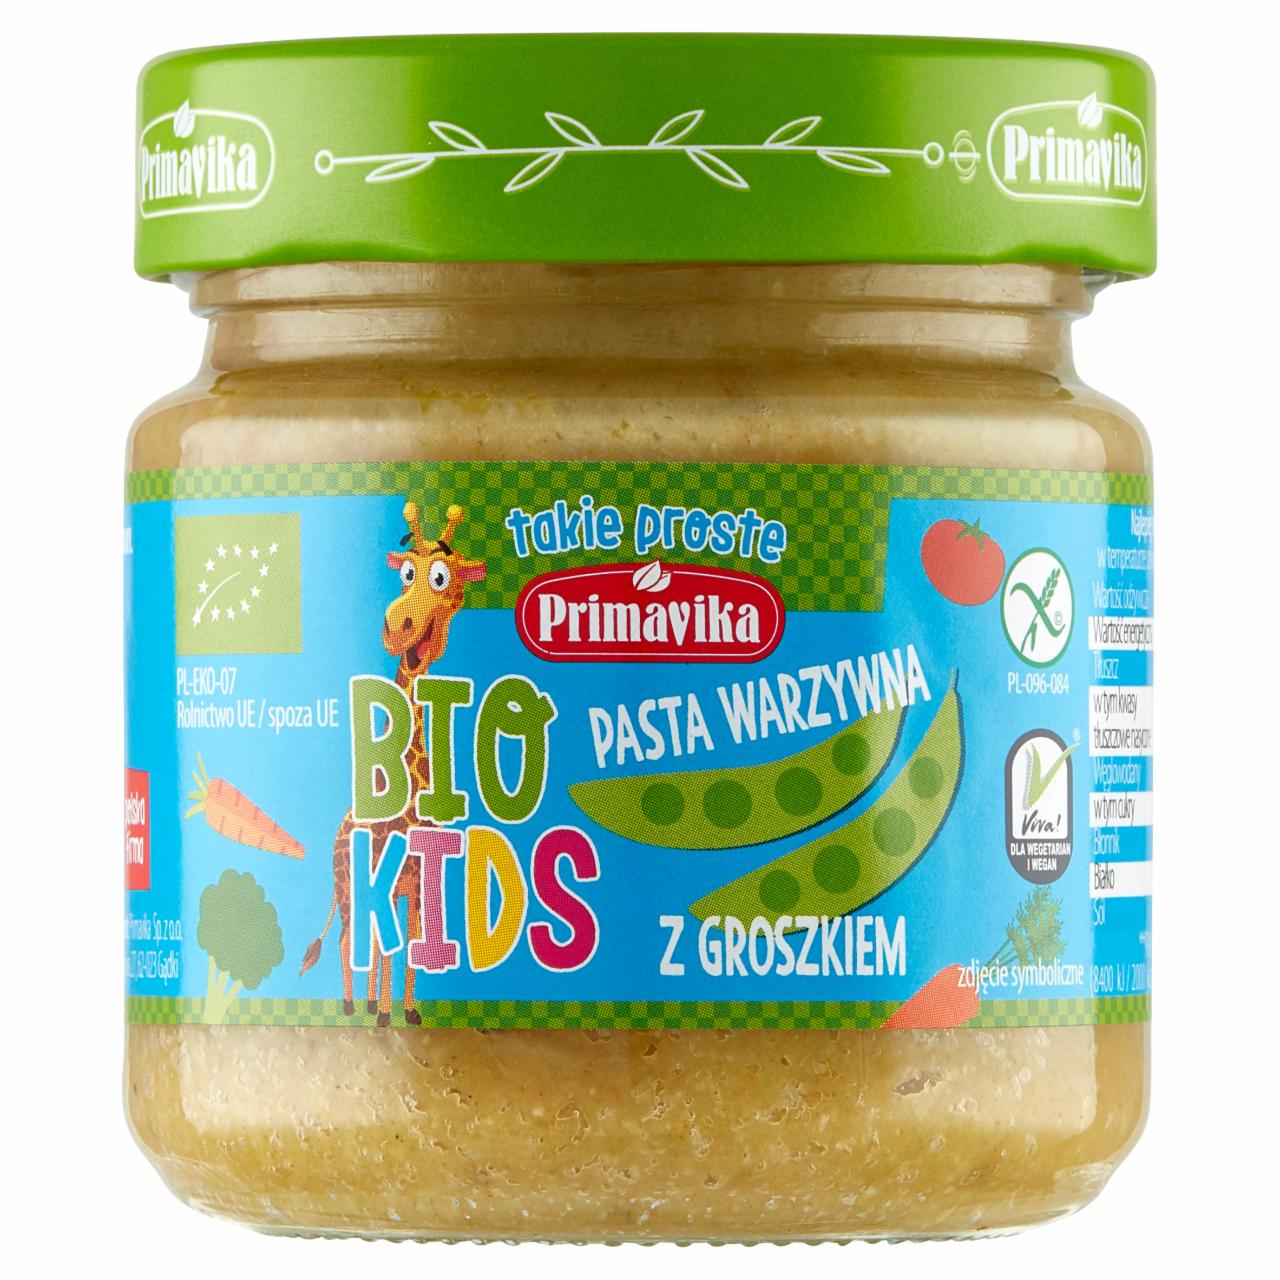 Zdjęcia - Primavika Bio Kids Pasta warzywna z groszkiem 160 g